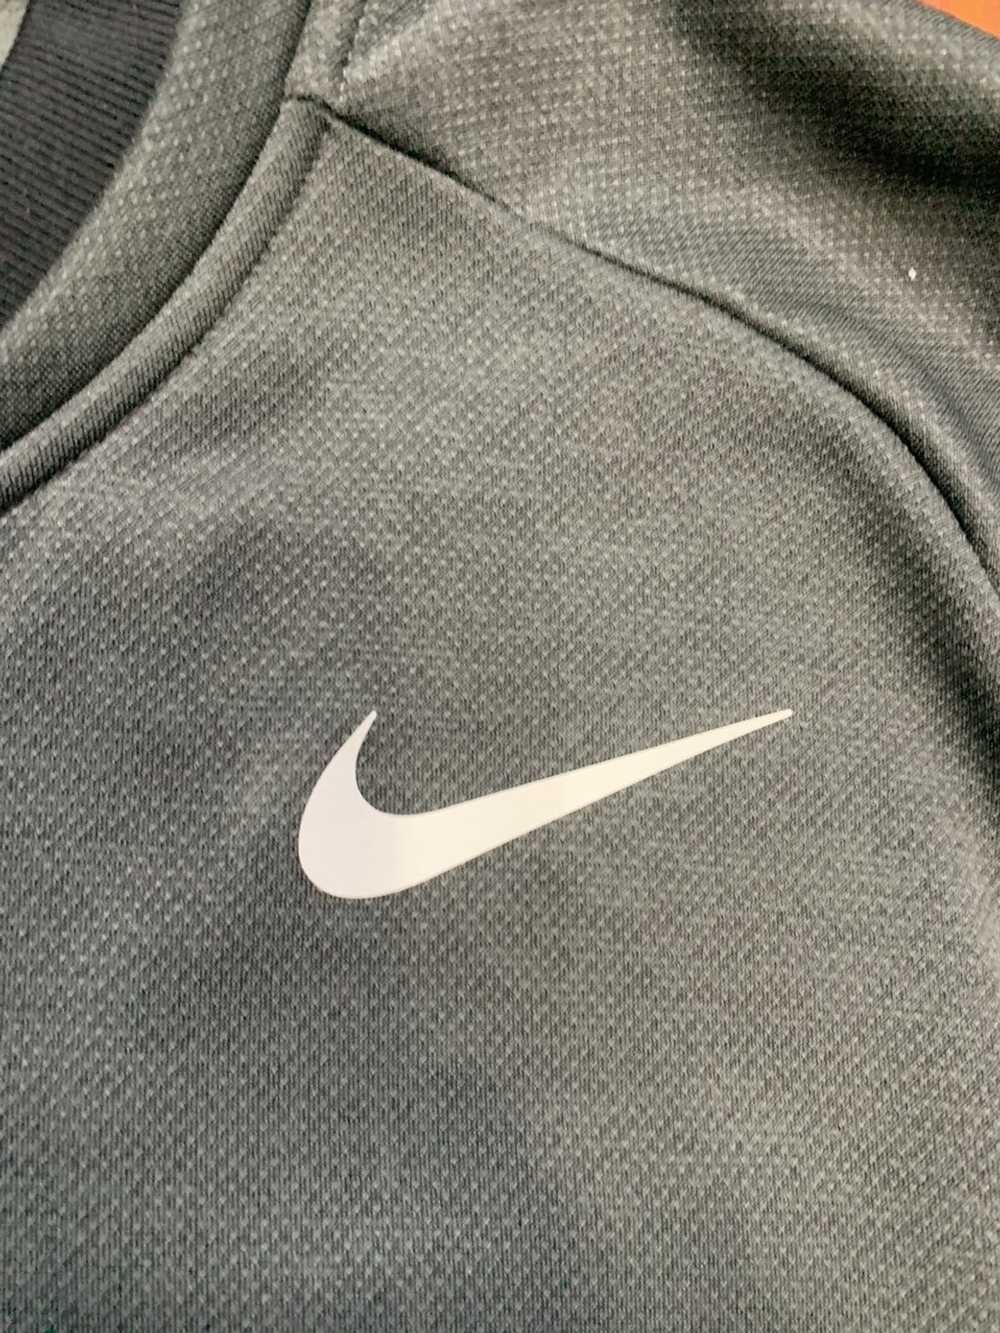 Nike Men’s Nike Drifit Superset Quarter Zip - image 4